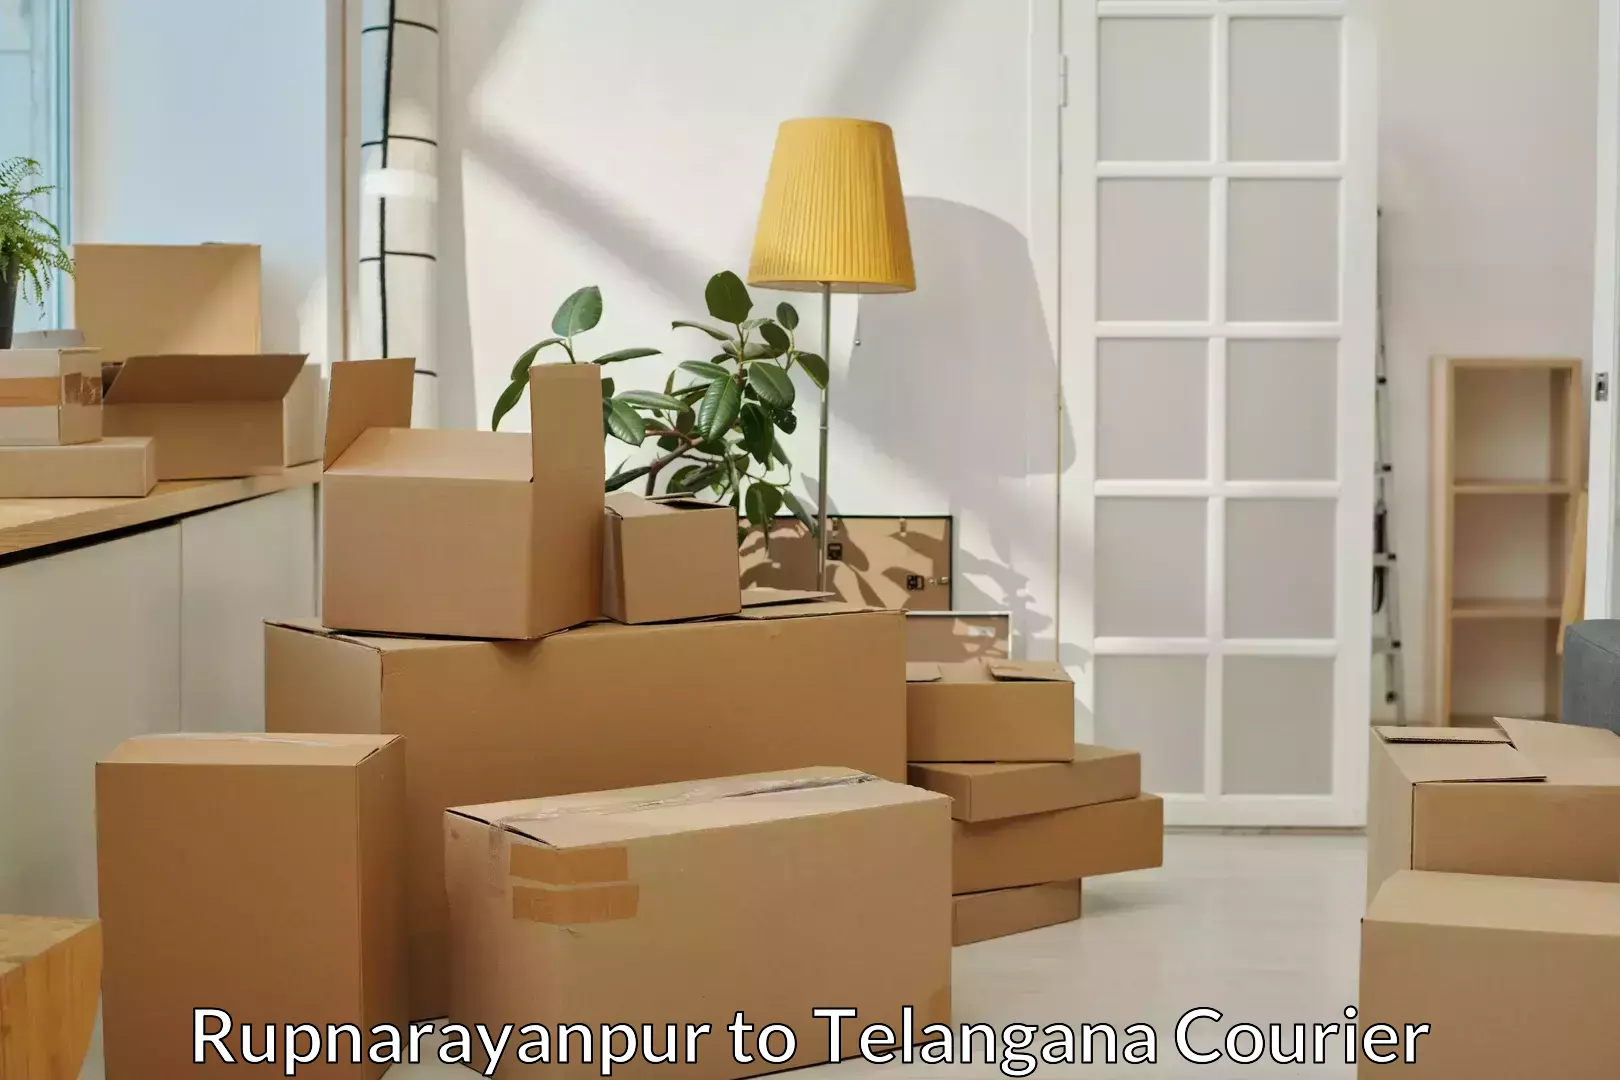 Full-service movers Rupnarayanpur to Telangana